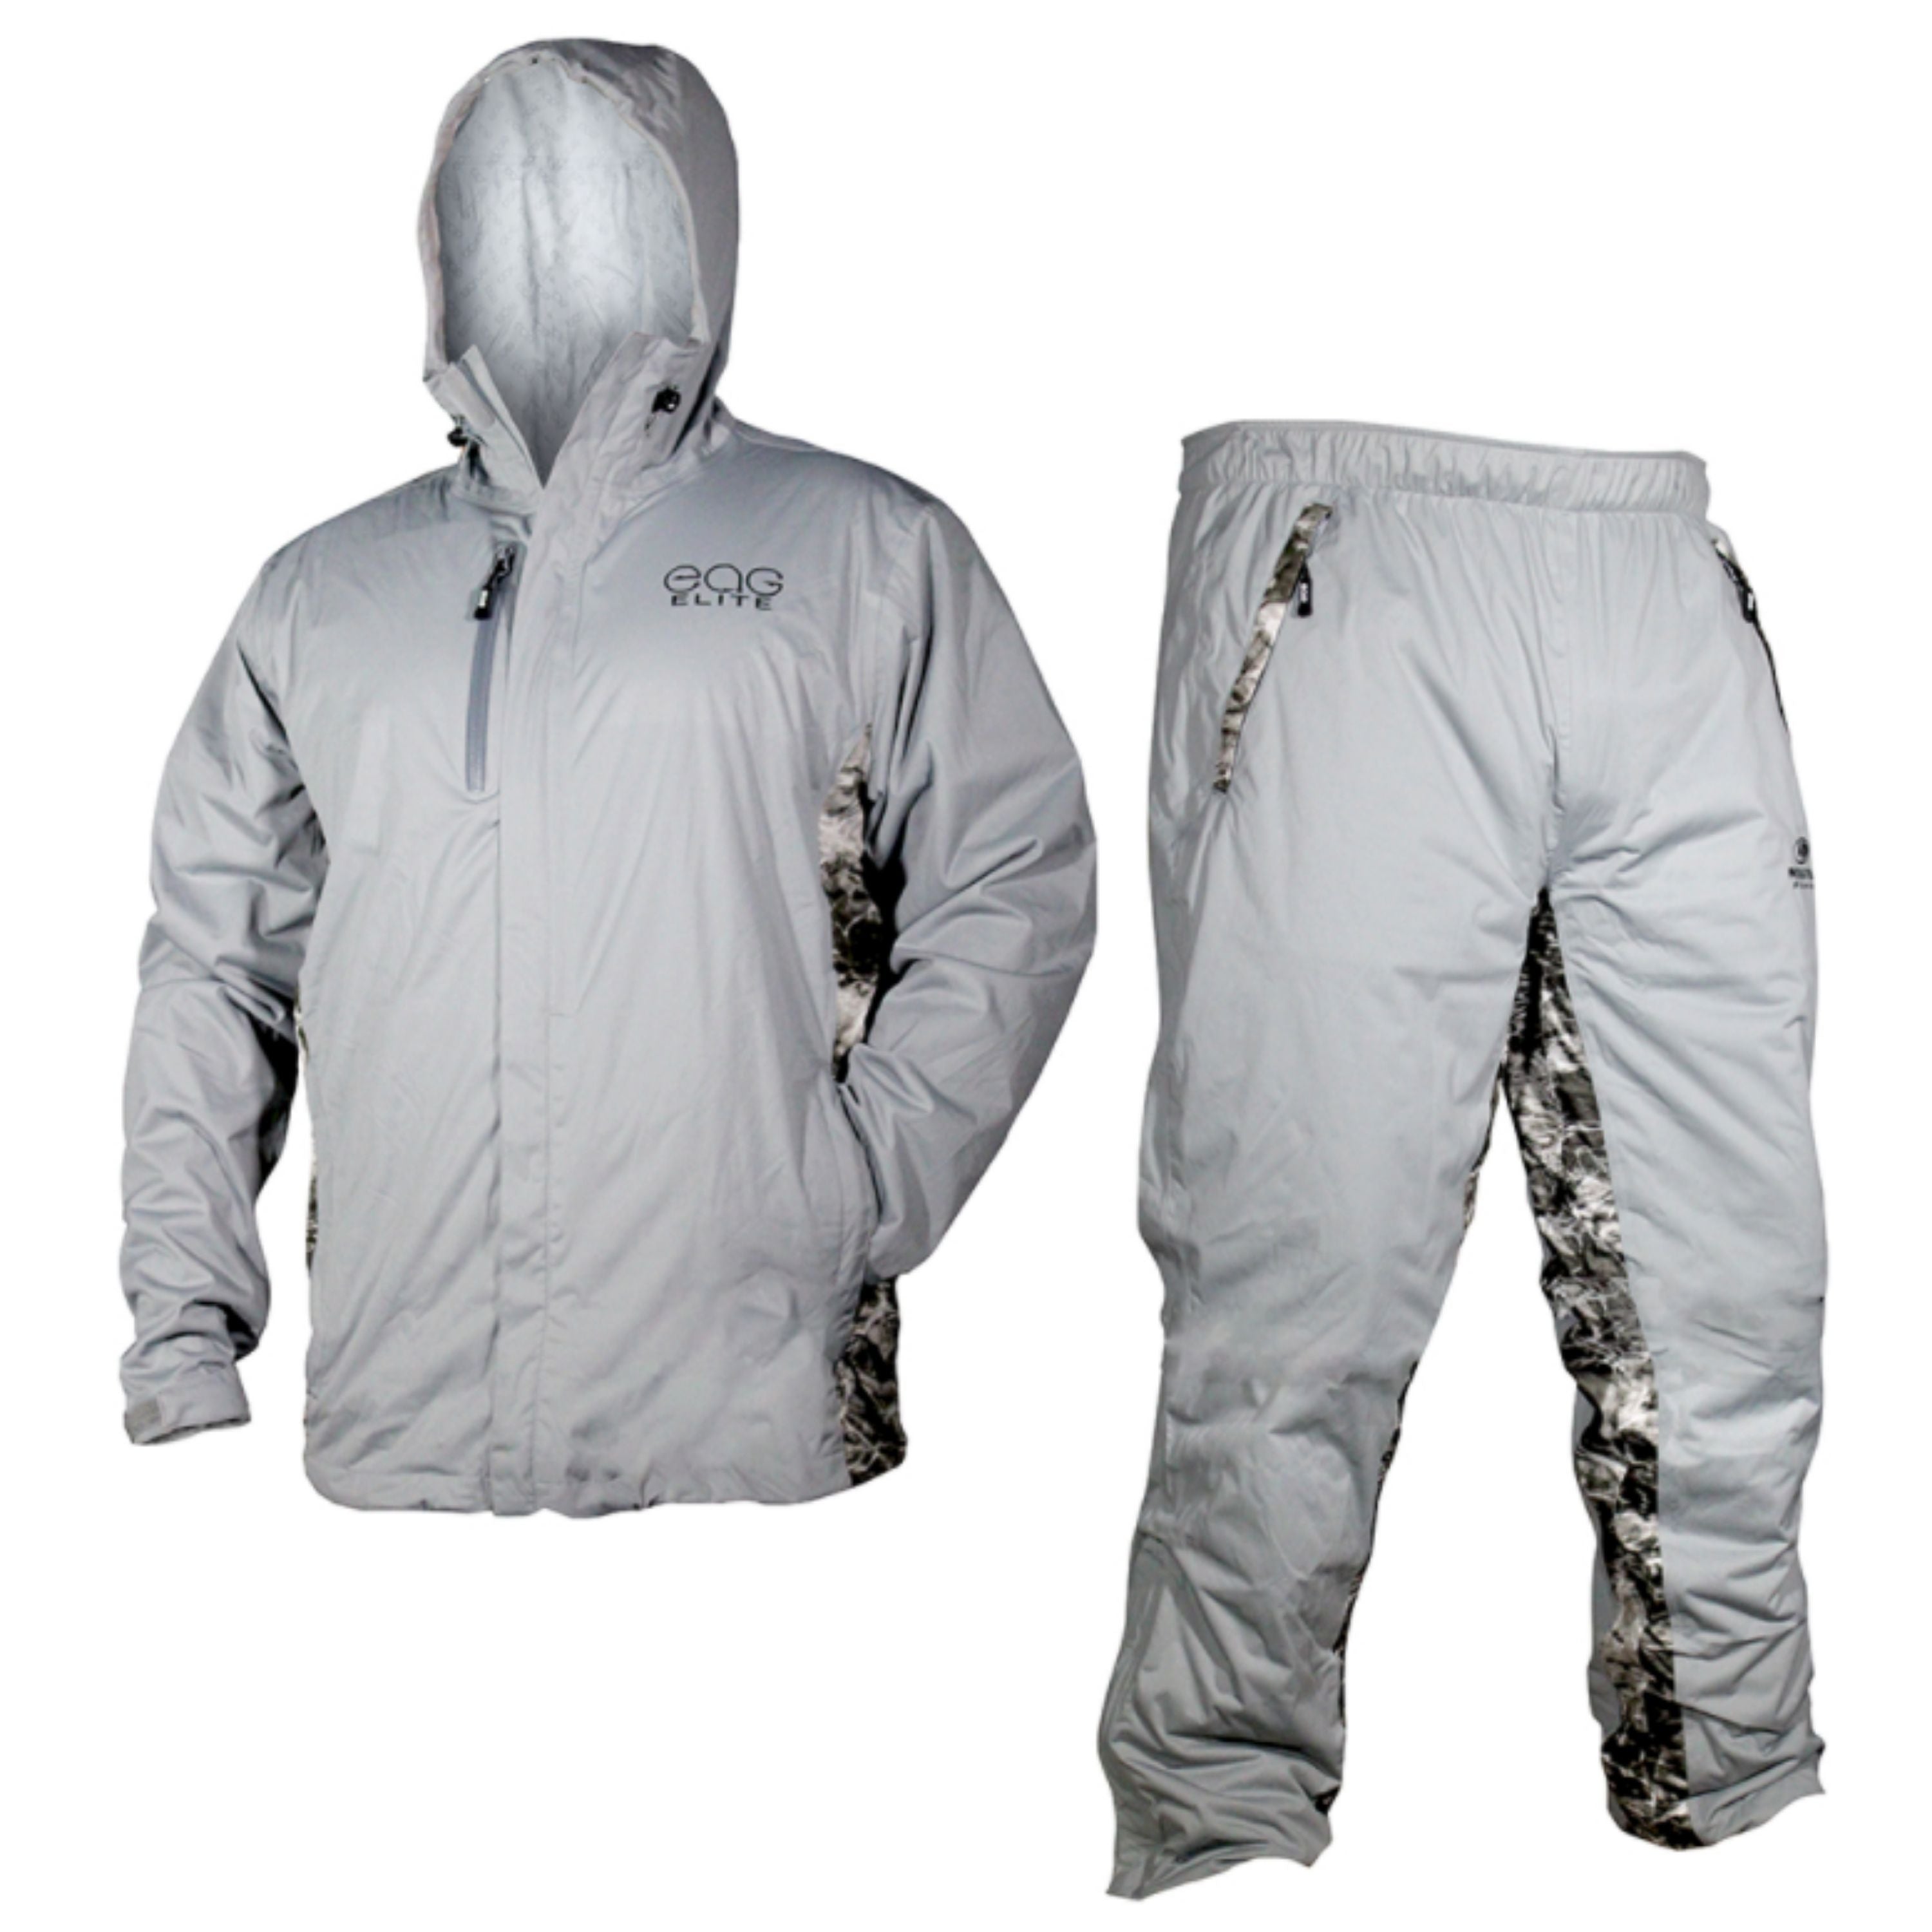 Waterproof breathable packable rain suit